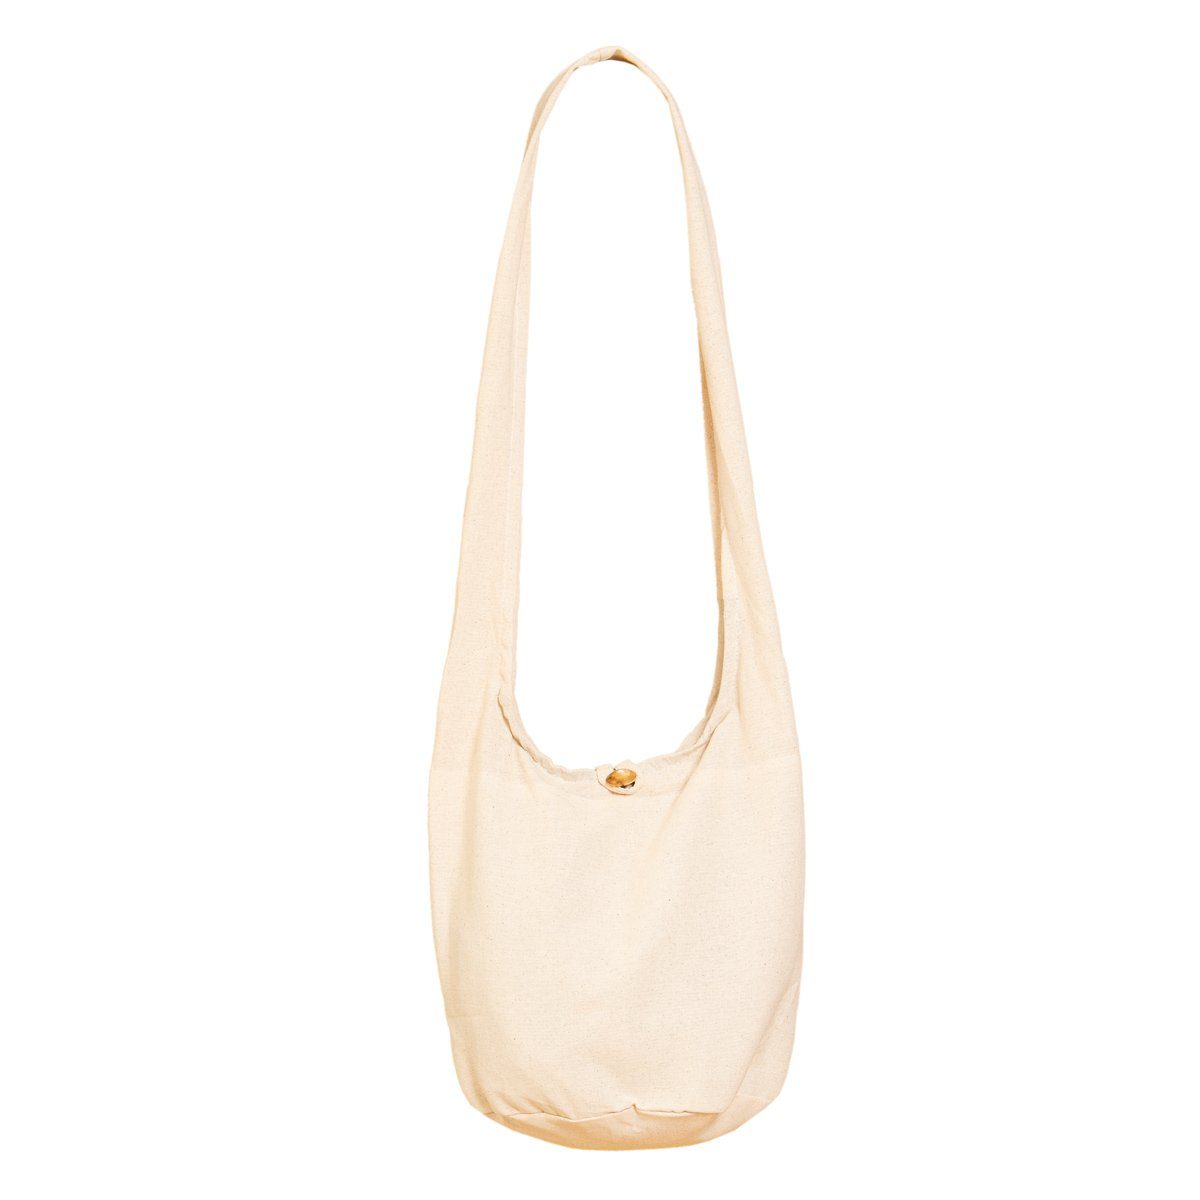 Umhängetasche PANASIAM auch als aus Wickeltasche Größen, Handtasche Schultertasche einfarbig Baumwolle in Natural 2 Beuteltasche Strandtasche Schulterbeutel oder 100%